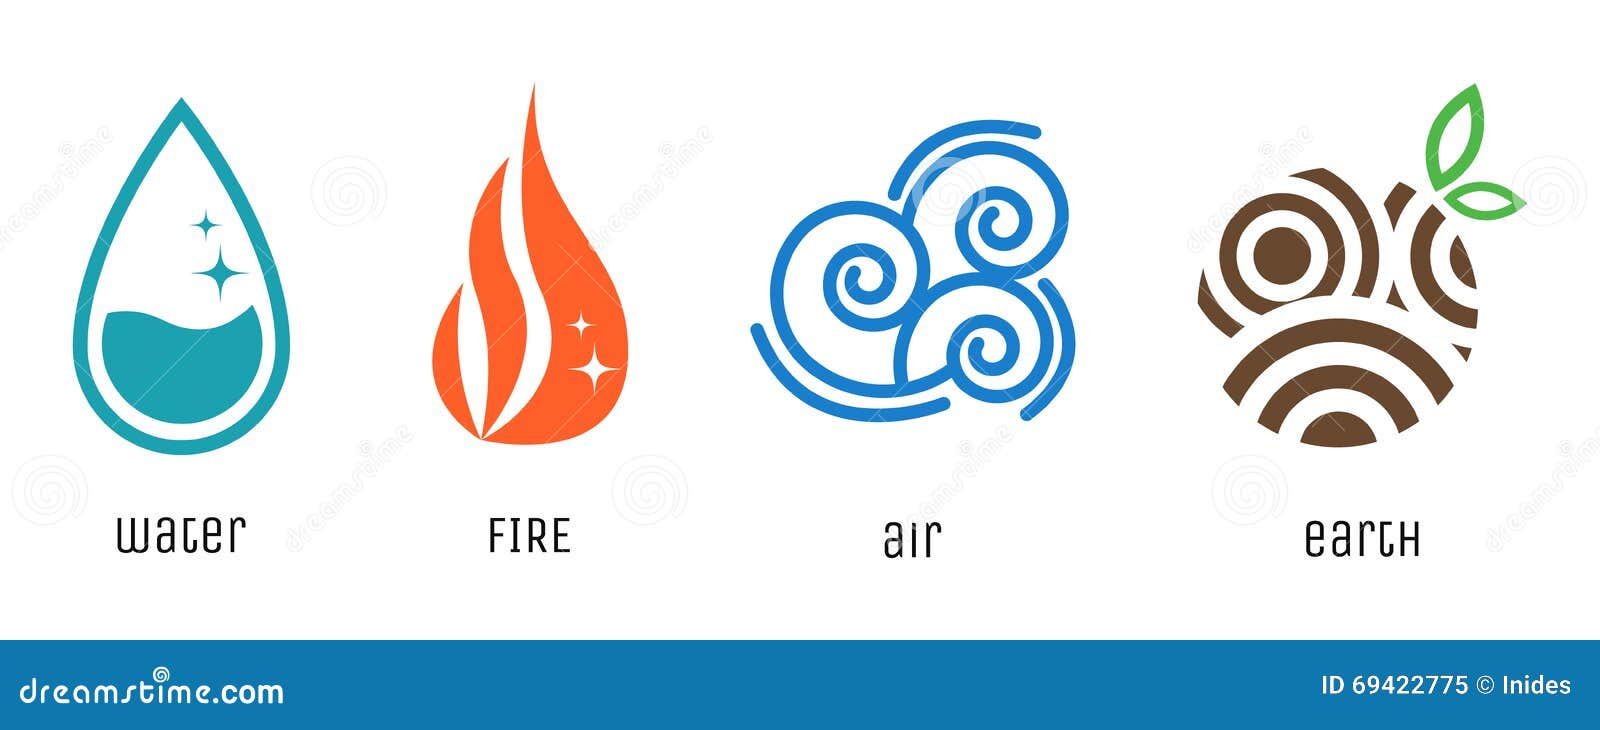 logotipo do ícone de quatro elementos com símbolos de estilo de linha. fogo,  água, vento, símbolo da terra. ilustração vetorial 5924645 Vetor no Vecteezy